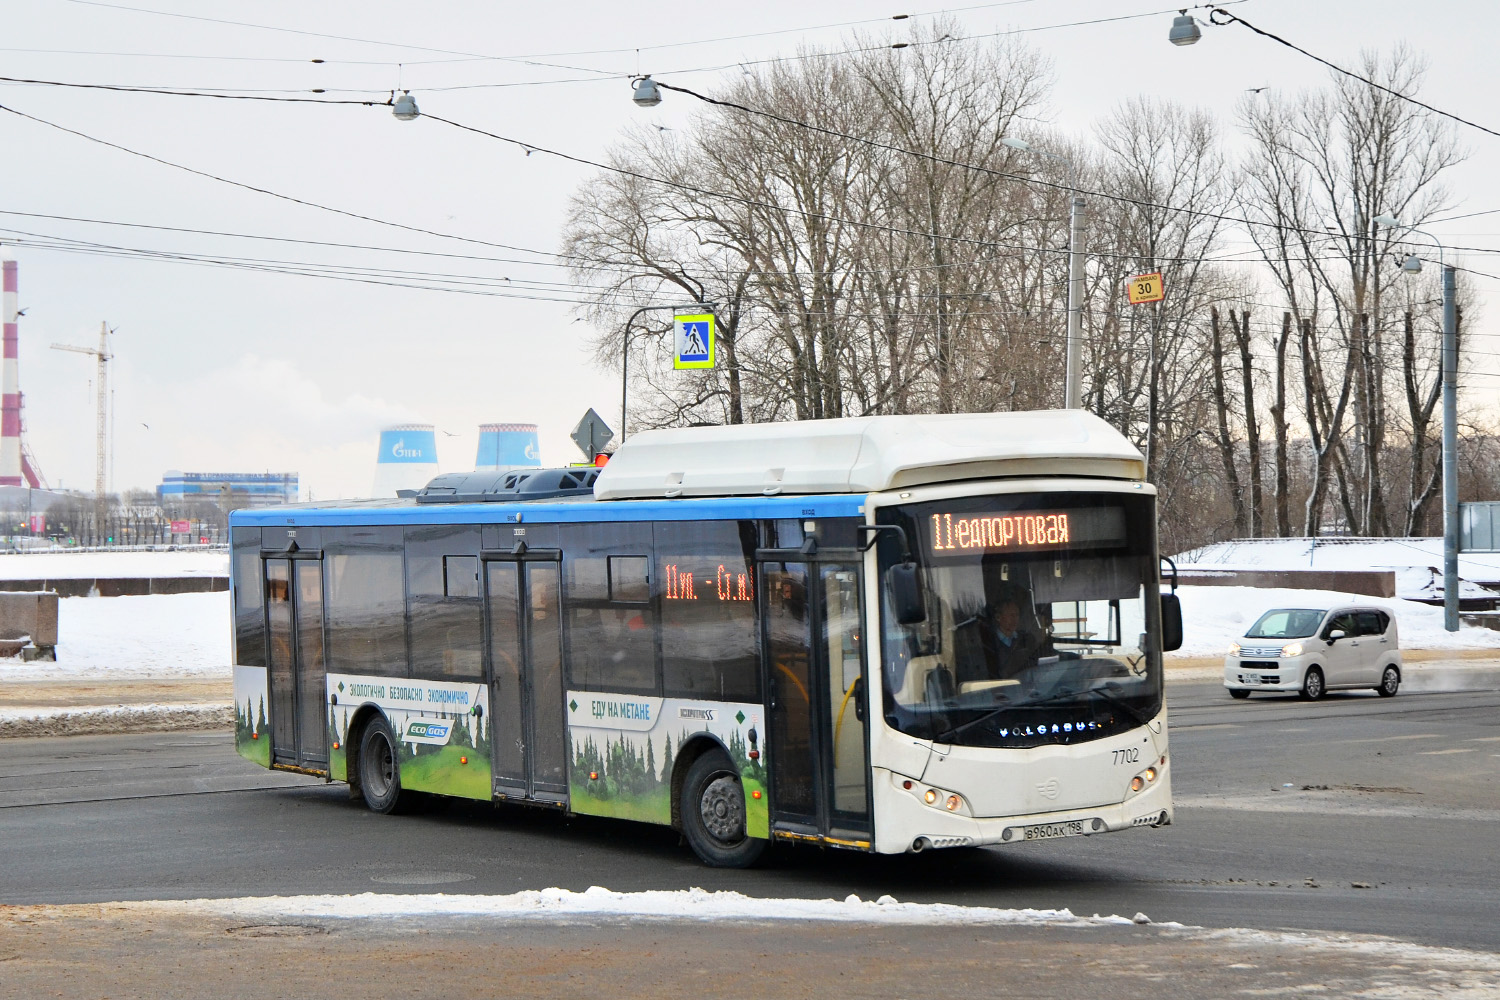 Szentpétervár, Volgabus-5270.G0 sz.: 7702